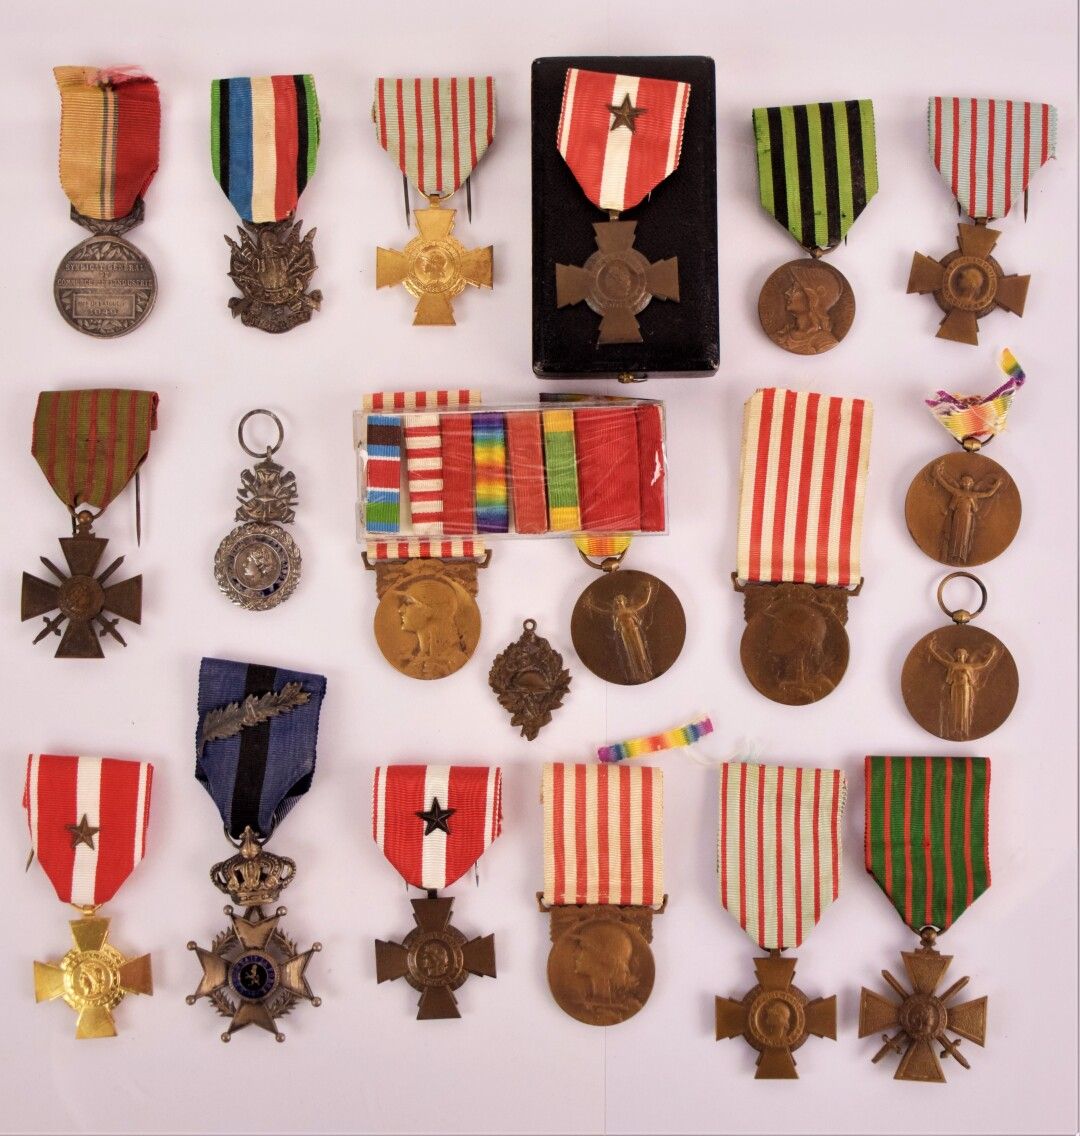 Null [MILITARIA]

收集了约19枚奖章，包括。

- 1870-71年战争纪念章

- 1914-18年战争纪念章(X3)

- 1914-18&hellip;